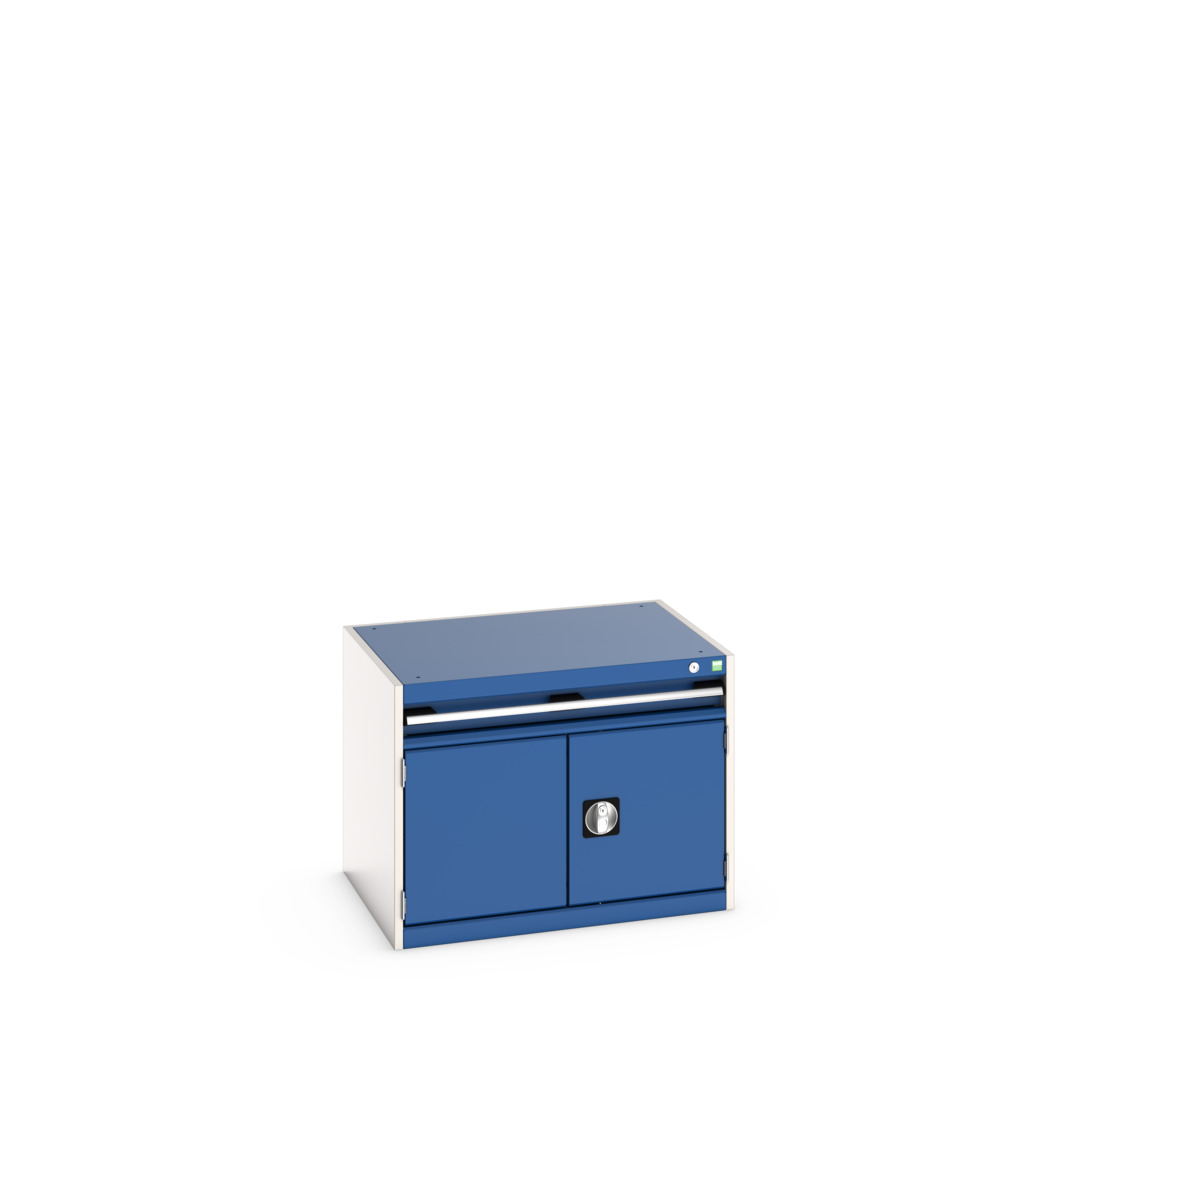 40020001.11V - cubio drawer-door cabinet